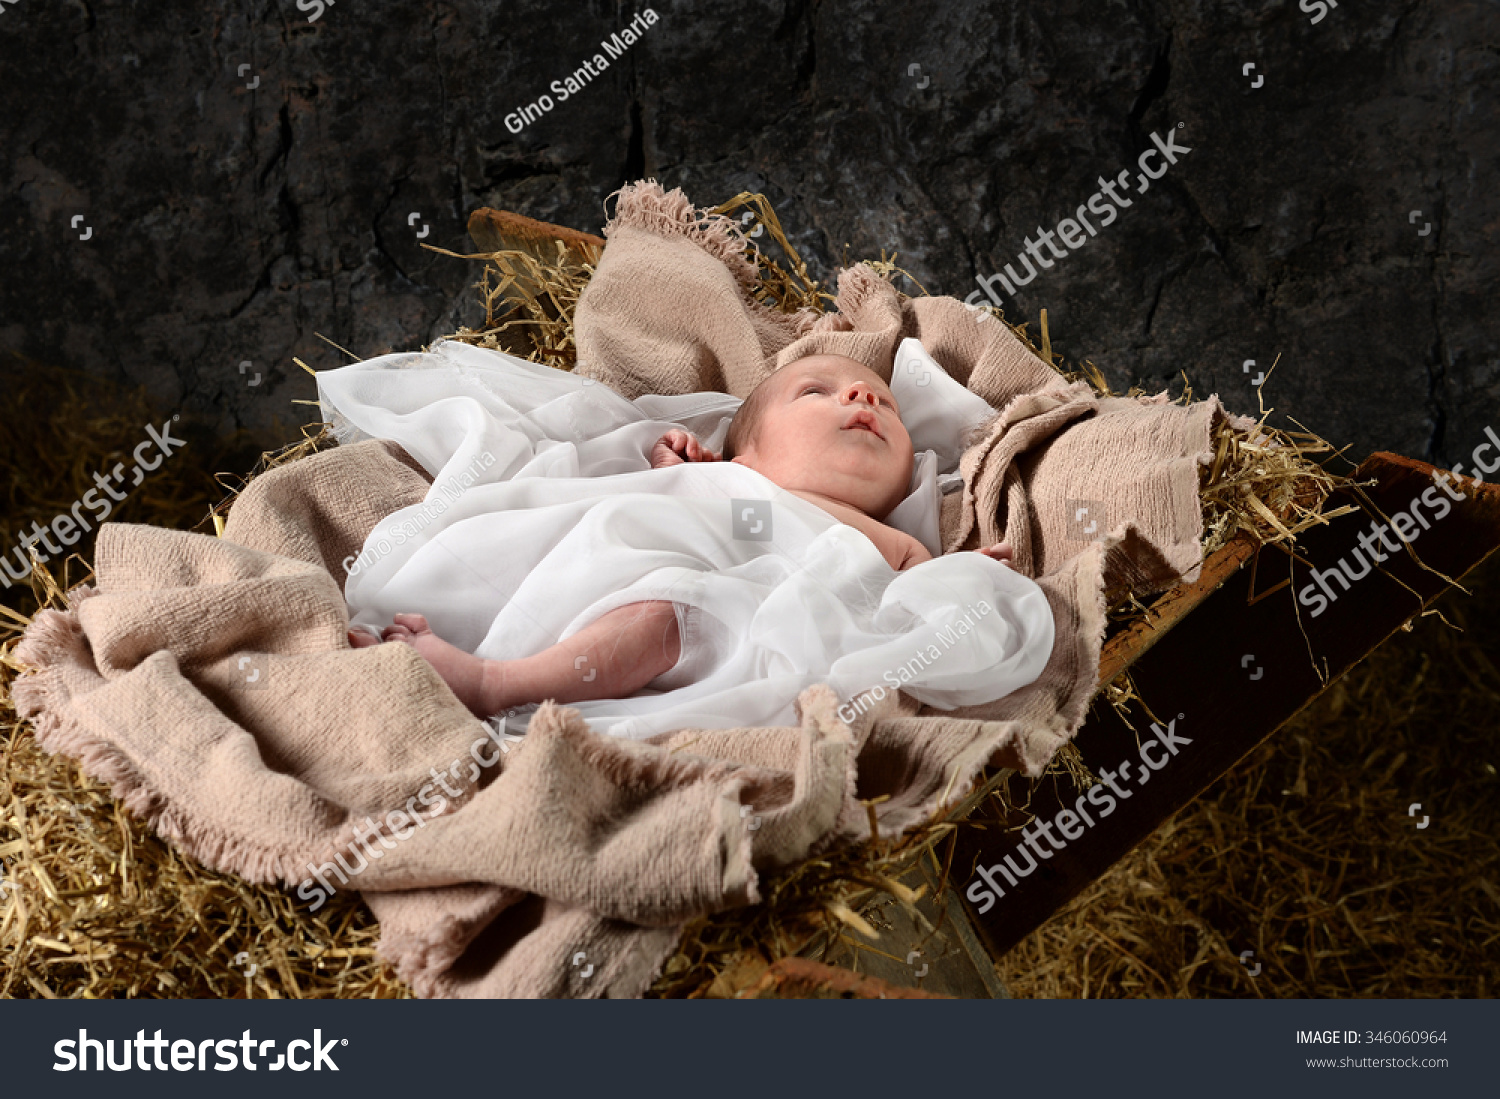 Jesus Resting On Manger Old Barn Stock Photo 346060964 - Shutterstock